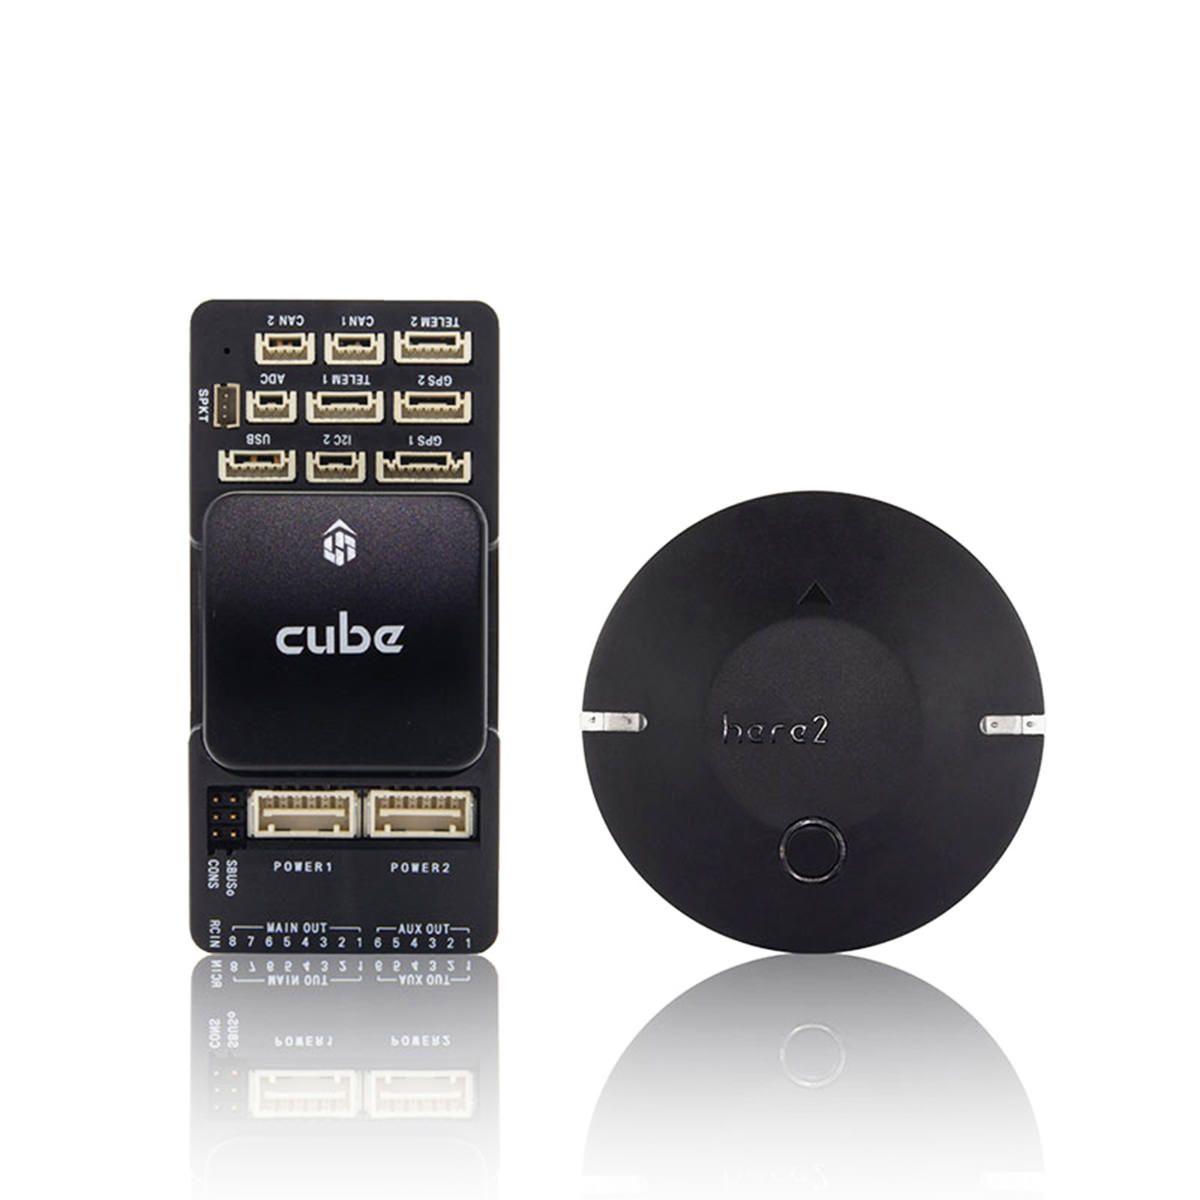 Pixhawk 2.1 - The Cube Black & Here 2 GPS Combo Set